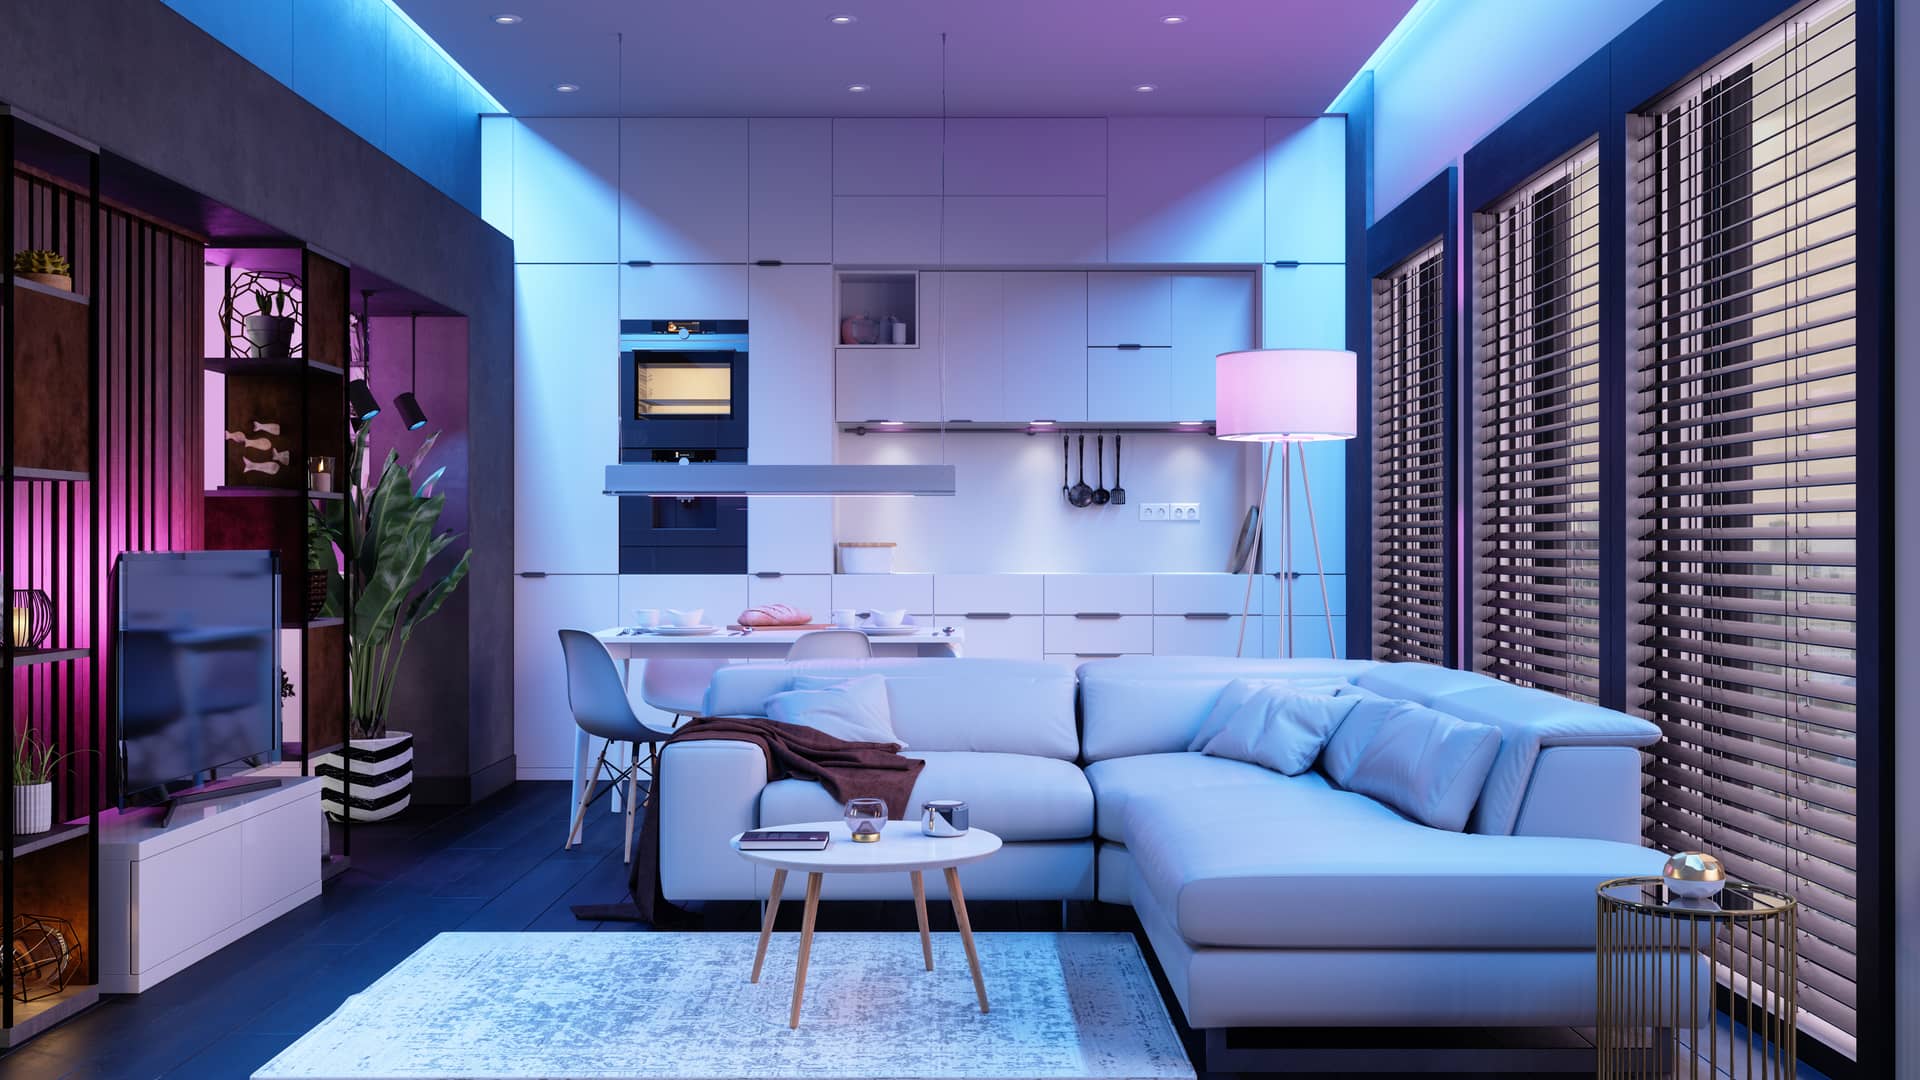 Moderna sala de estar cocina comedor de vivienda con seguro de hogar con liberty seguros